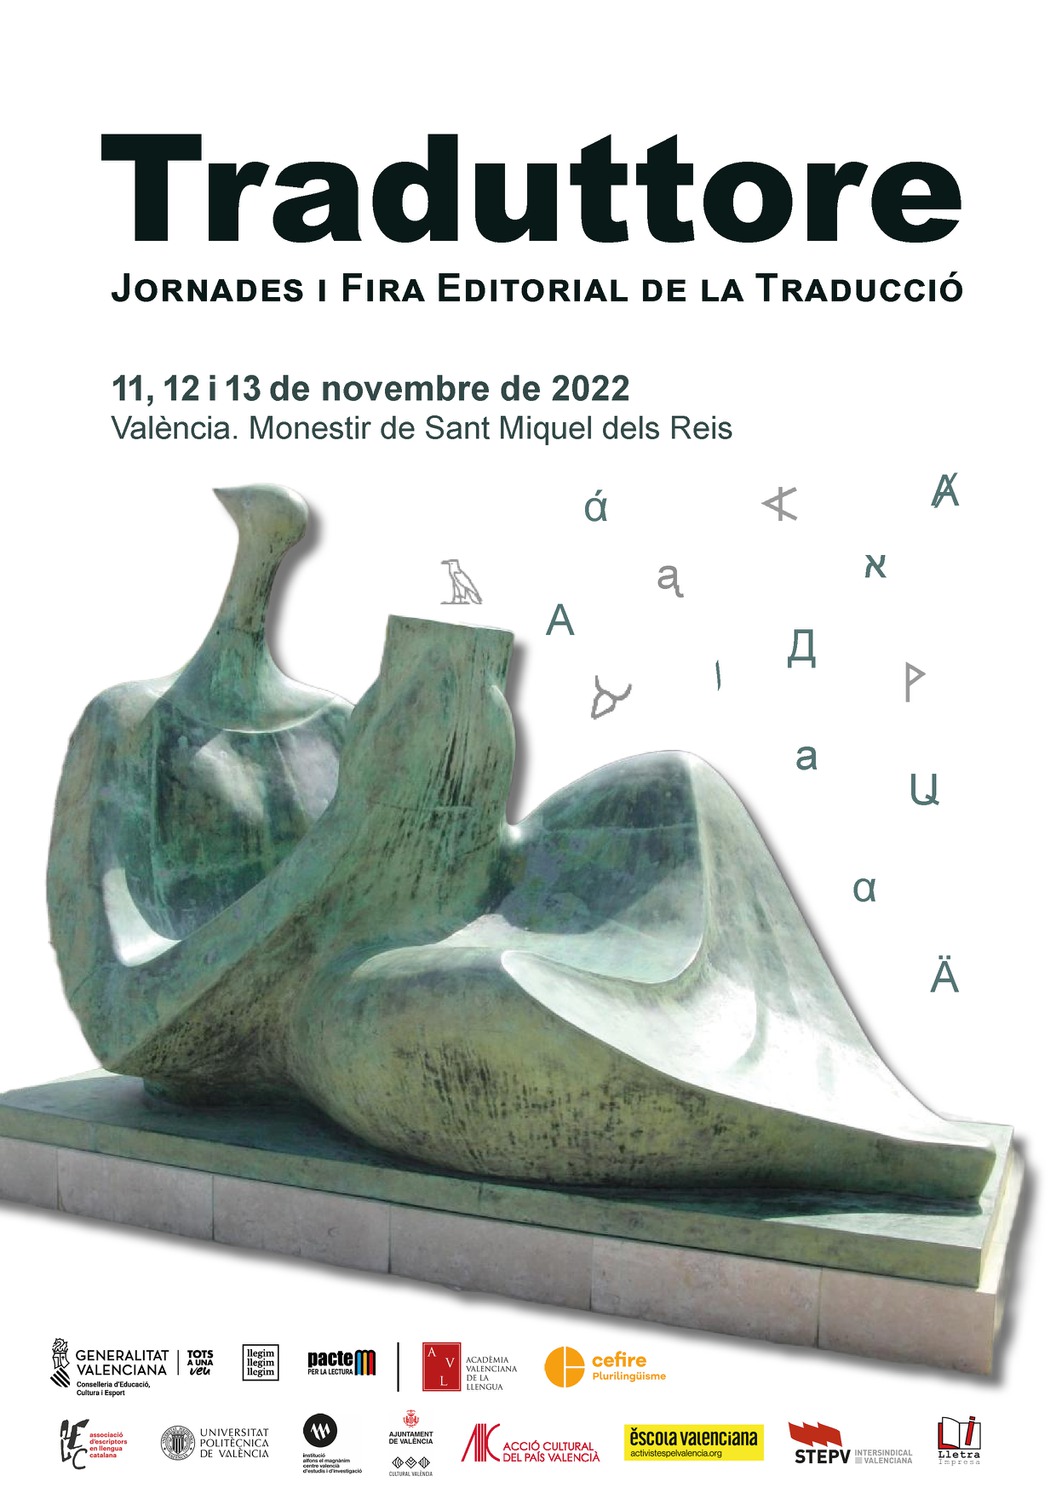 Traduttore, 1a edició a València d'unes Jornades i Fira Editorial